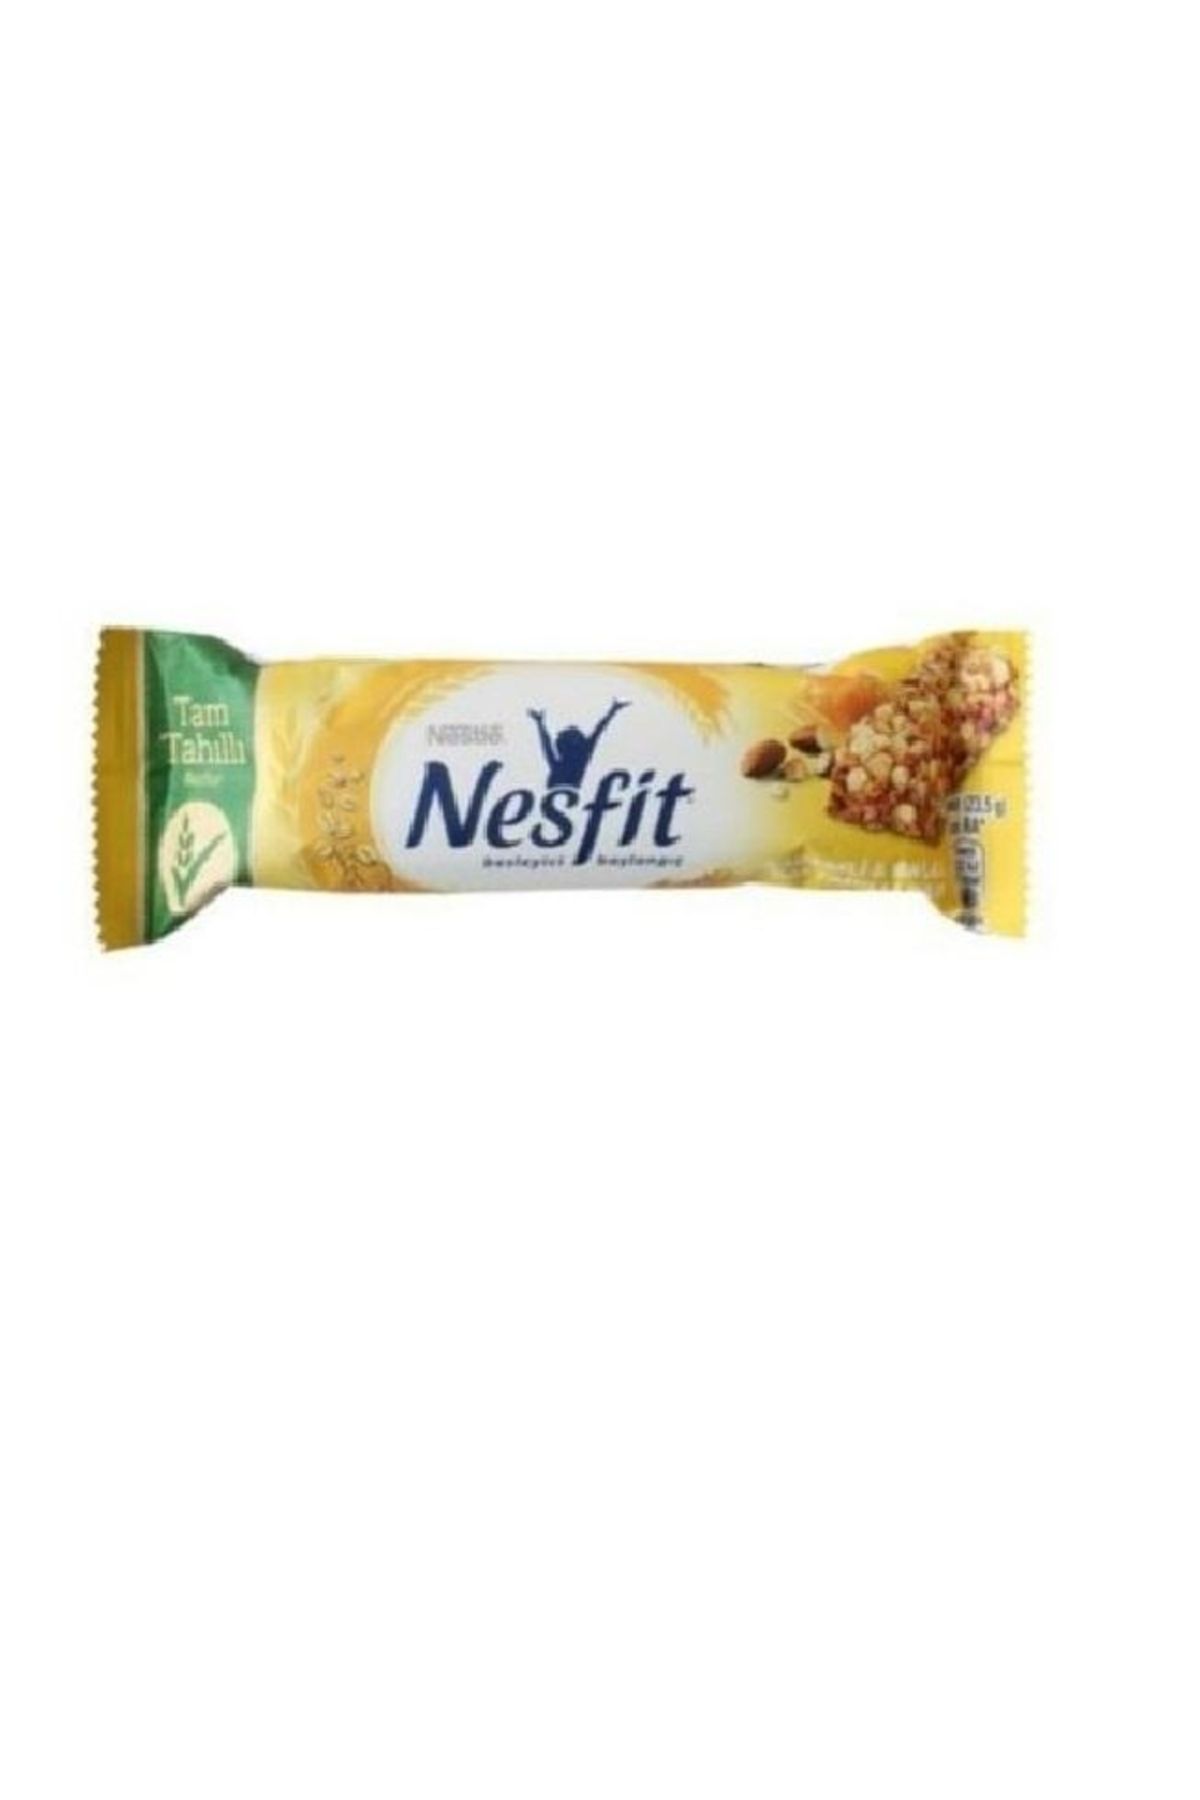 Nestle Nesfit Ballı Bademli Tam Tahıllı Bar 16 Lı 23.5 gr